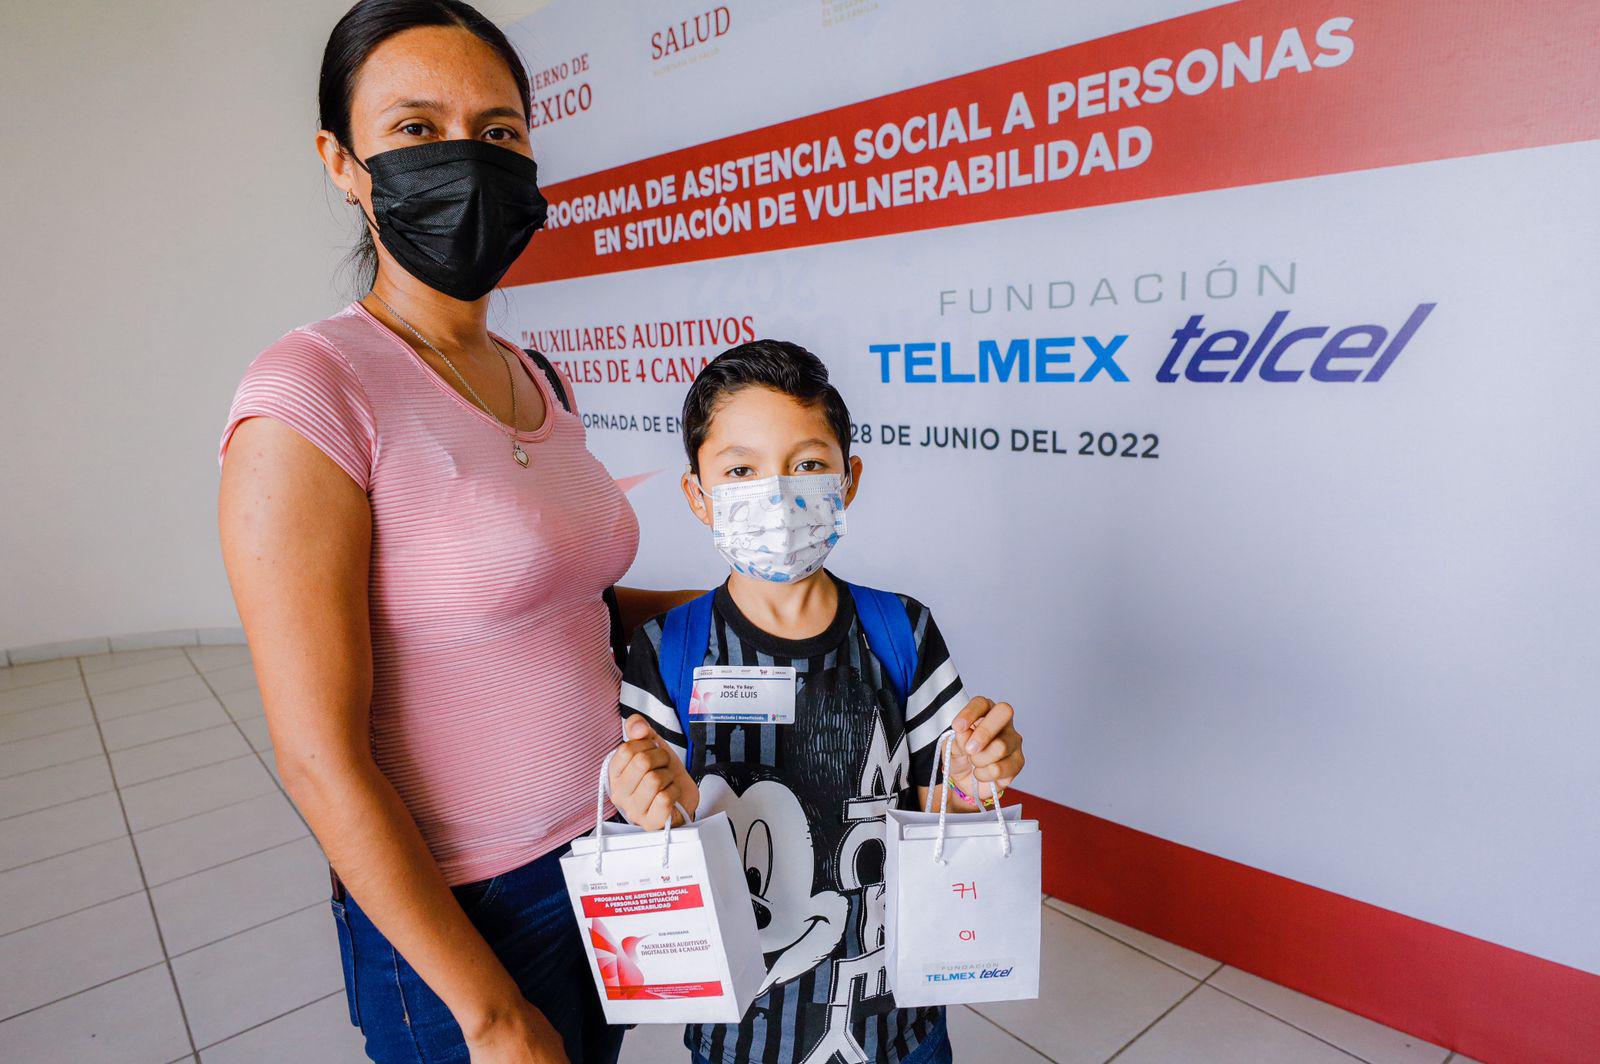 $!DIF Sinaloa y Fundación Telmex Telcel entregaron auxiliares auditivos a personas de escasos recursos